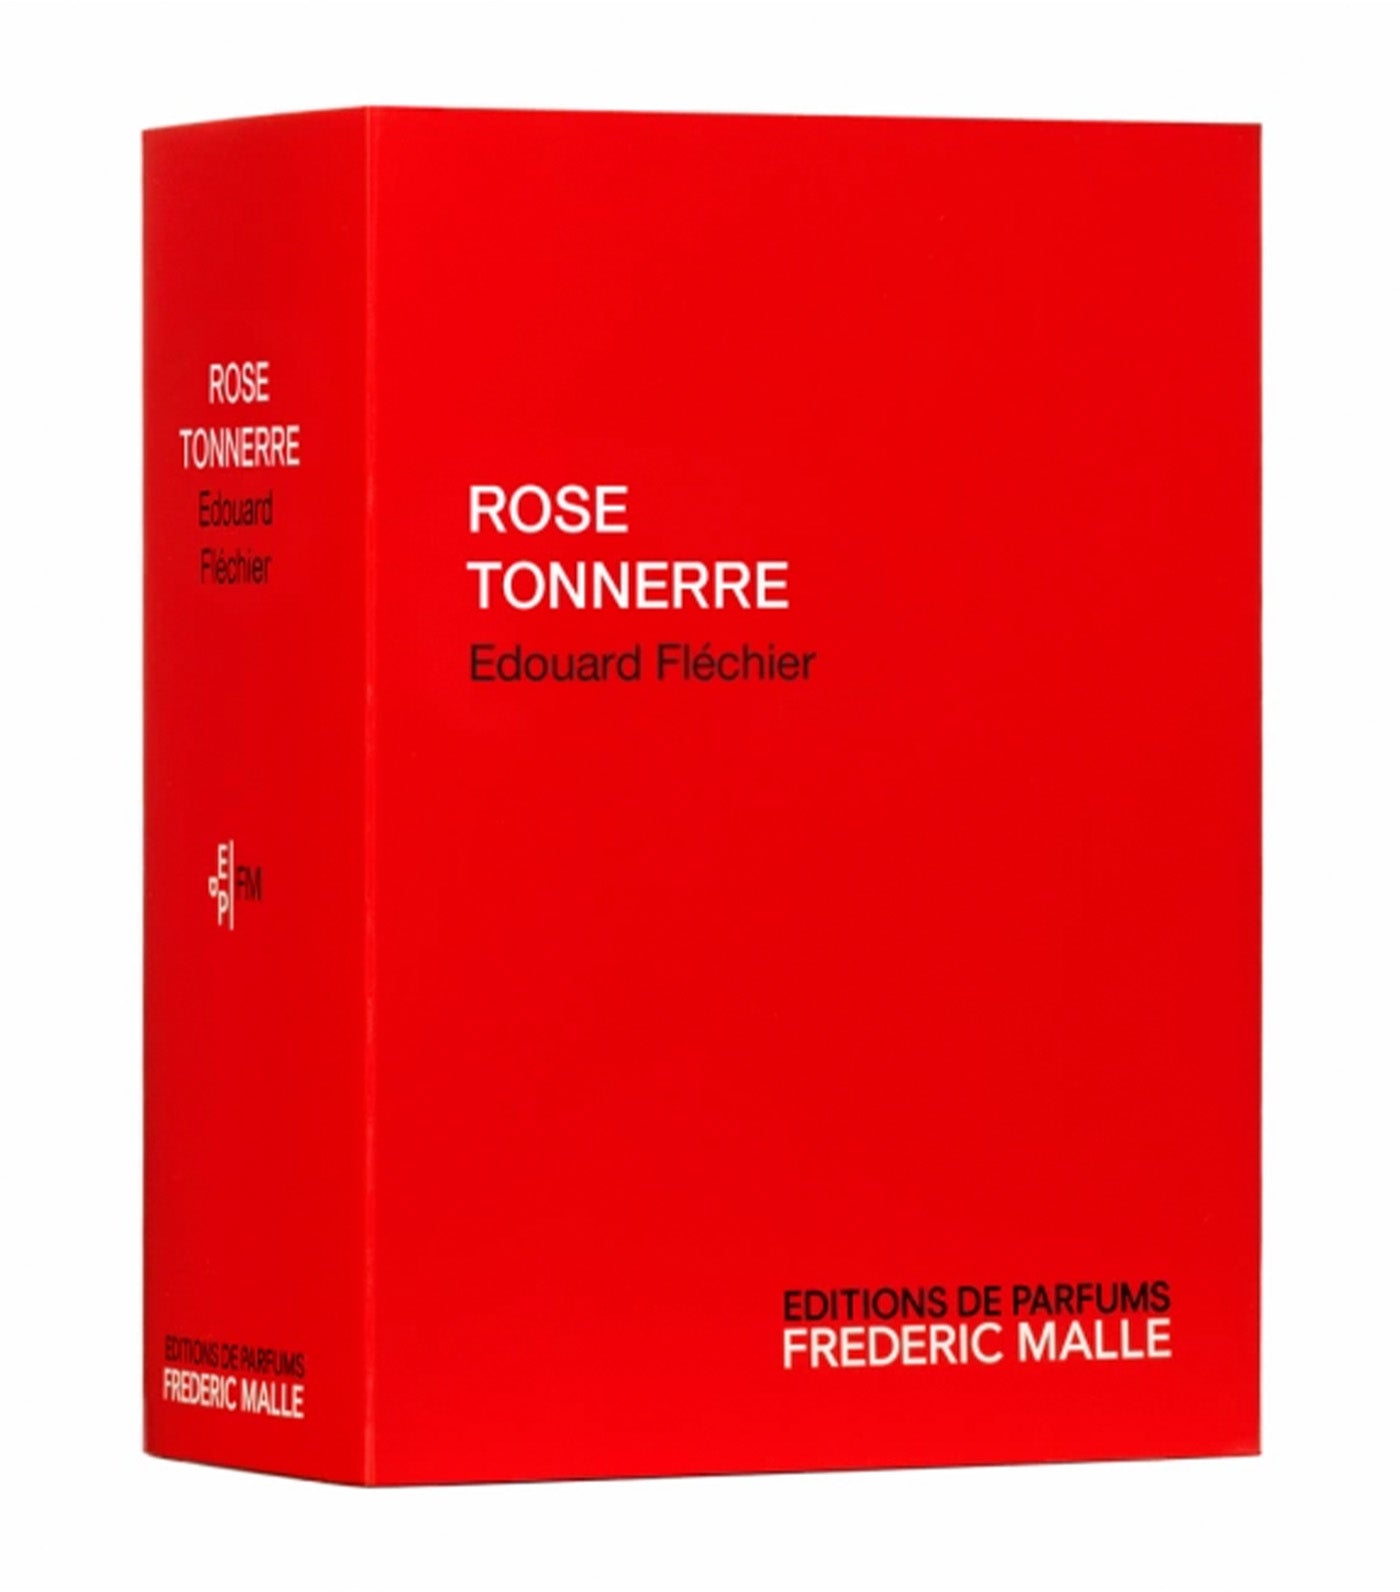 Rose Tonnerre by Edouard Fléchier